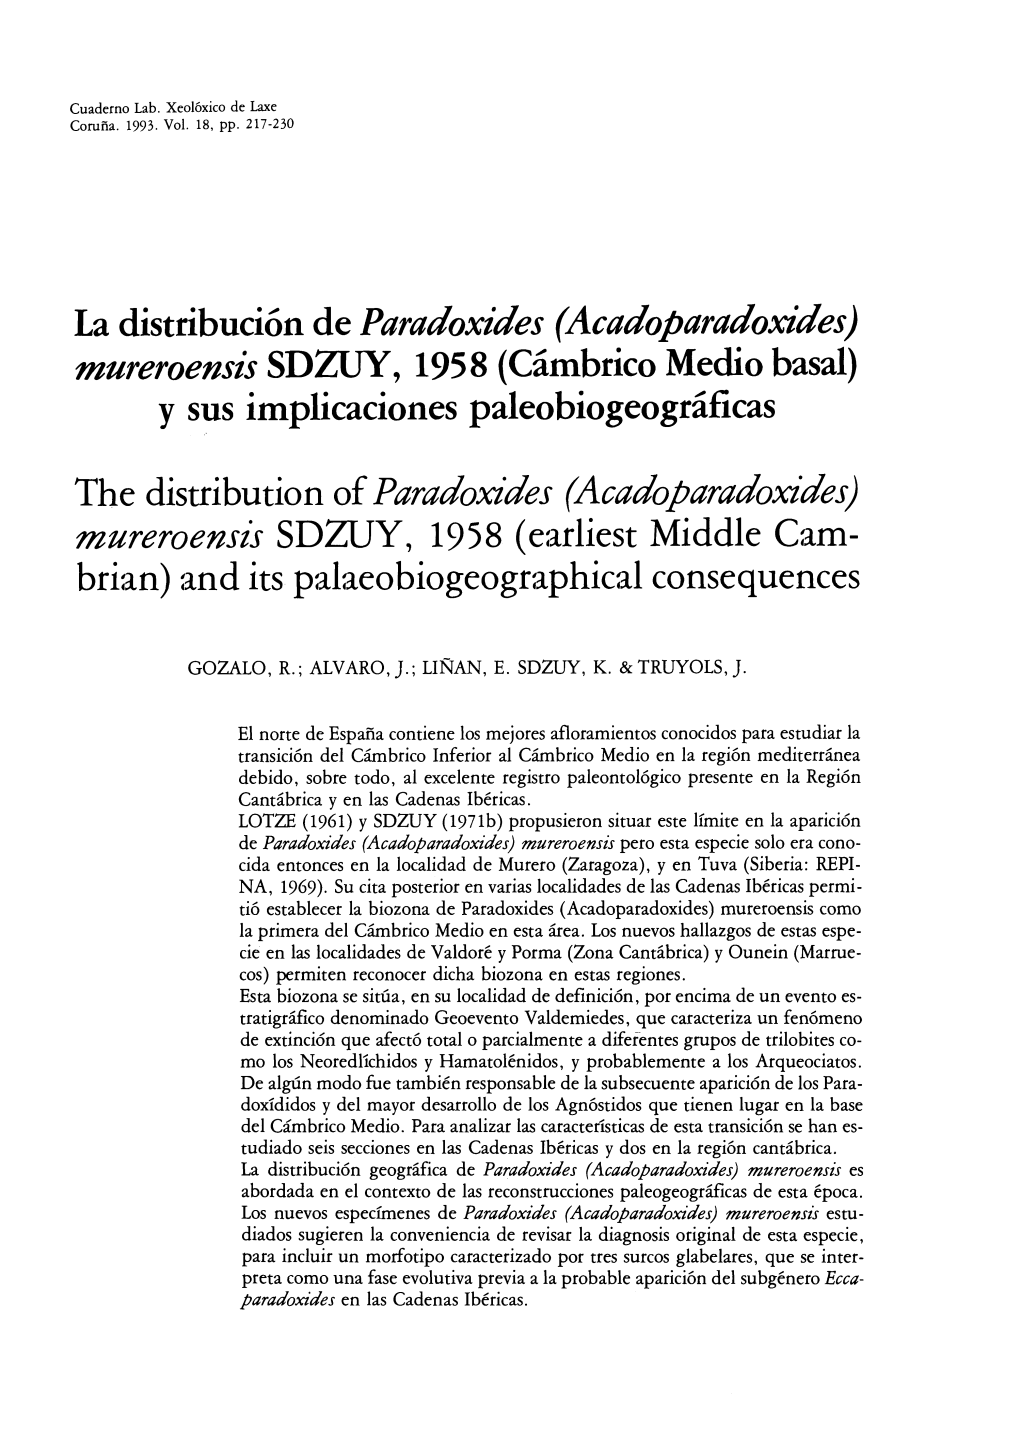 La Distribución De Paradoxides (Acadoparadoxides) Mureroensis SDWY, 1958 (Cámbrico Medio Basal) Y Sus Implicaciones Paleobiogeográficas